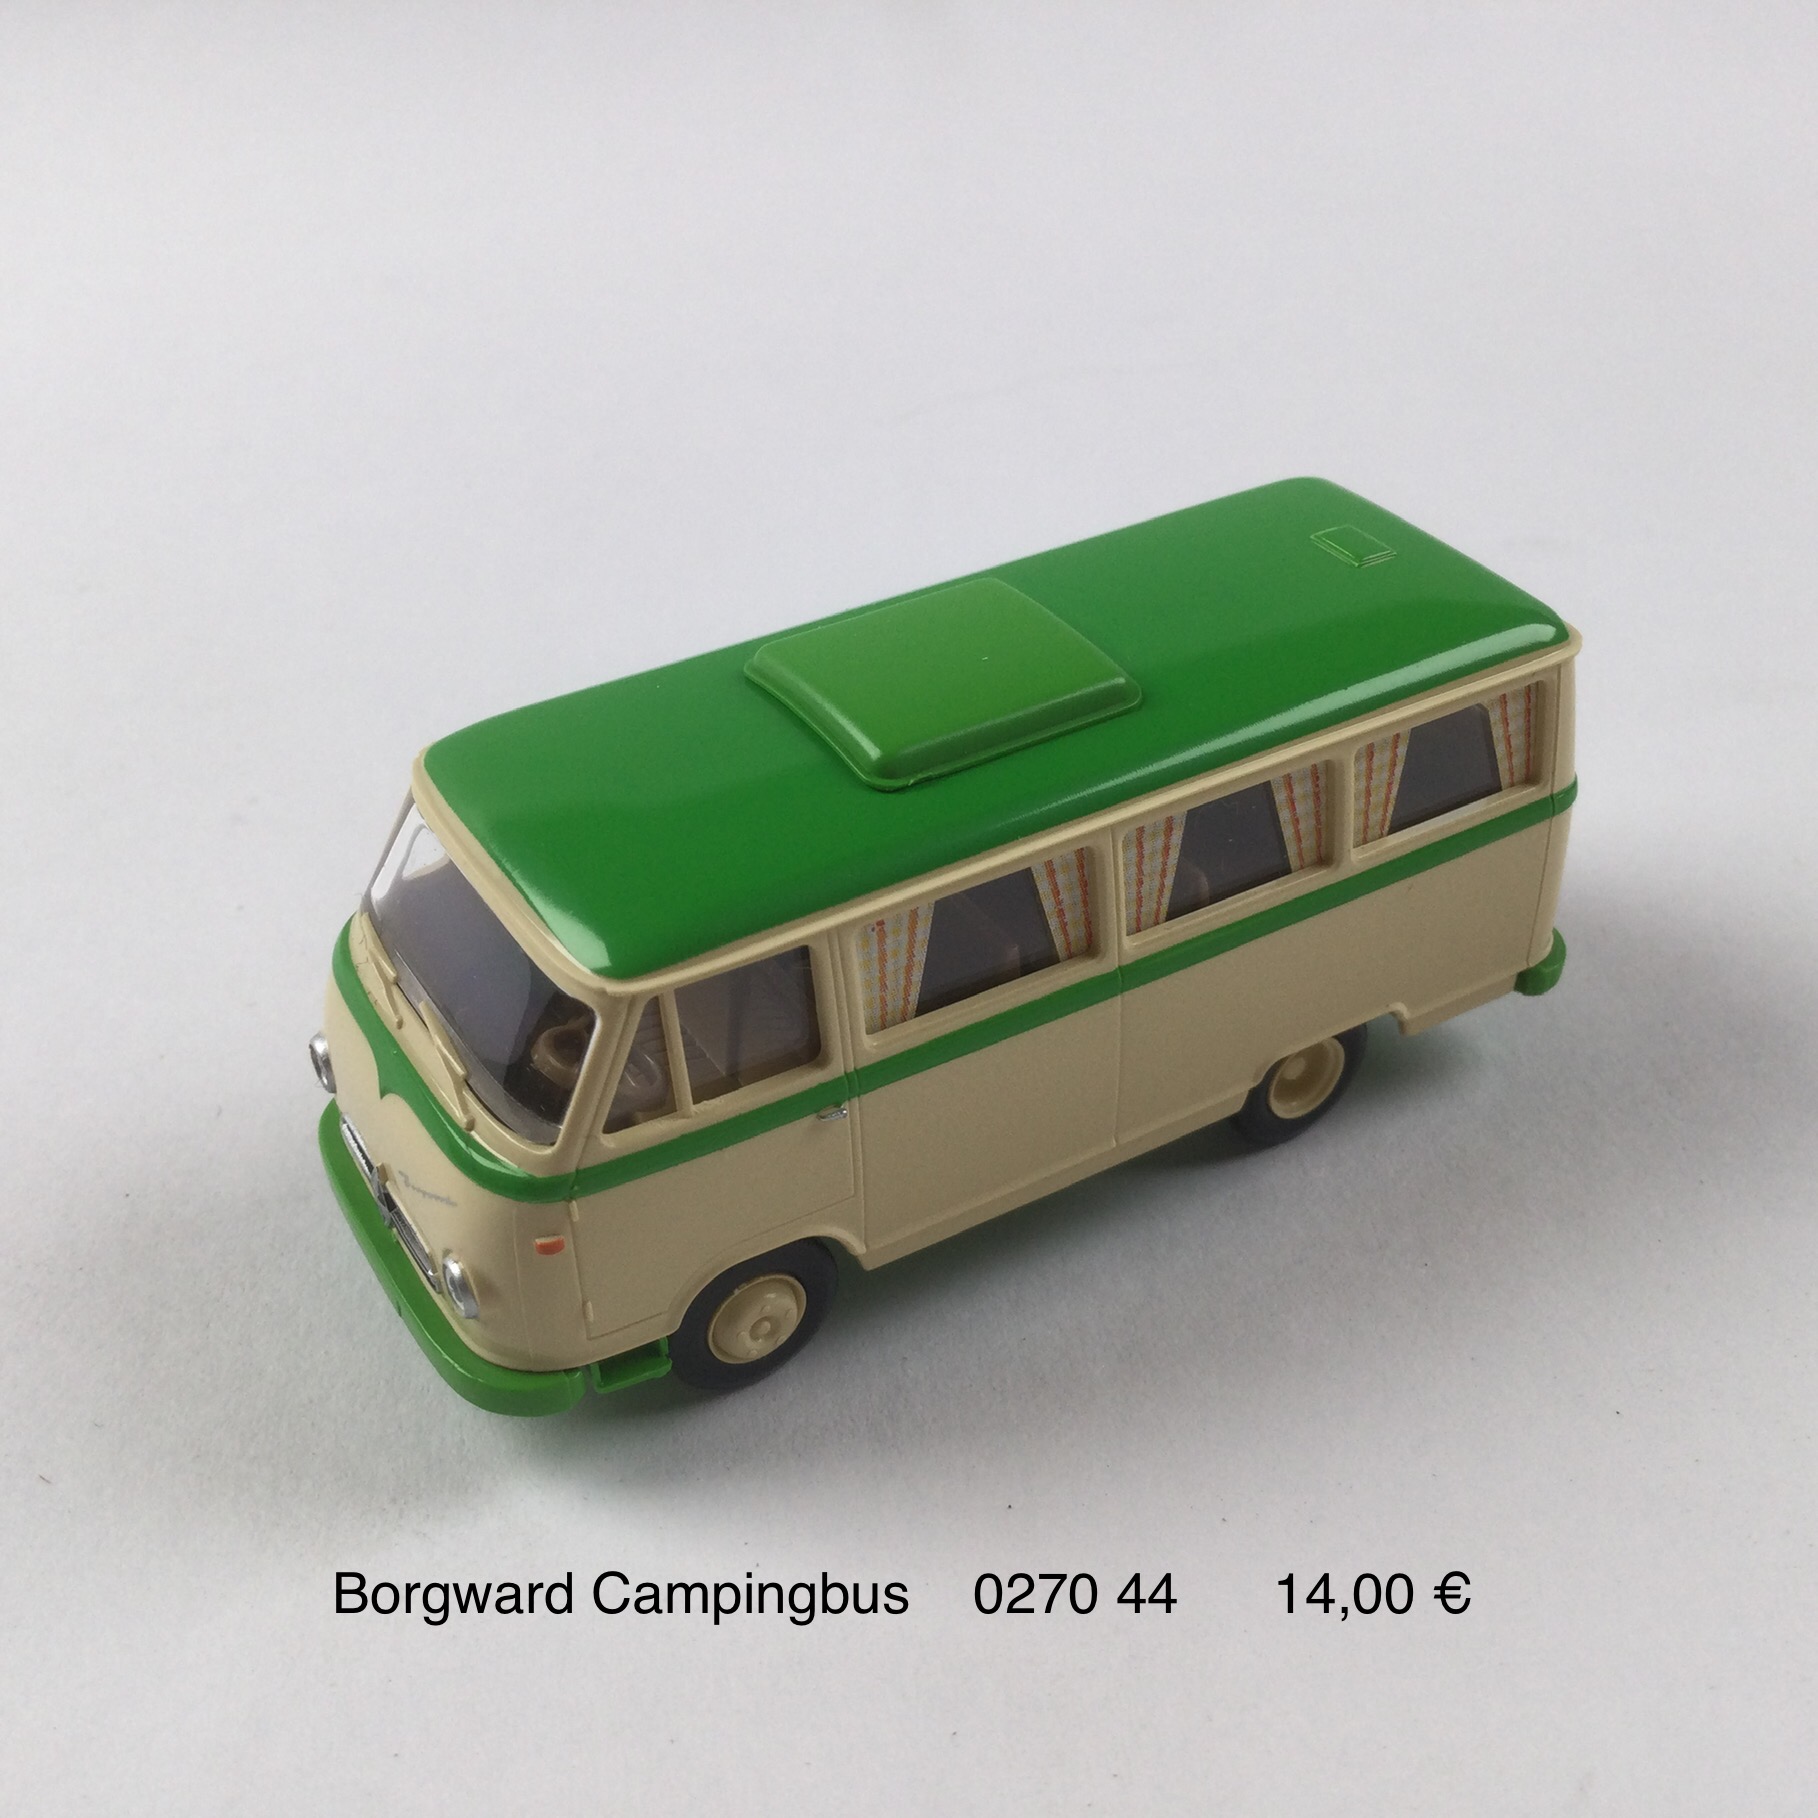 Borgward Campingbus